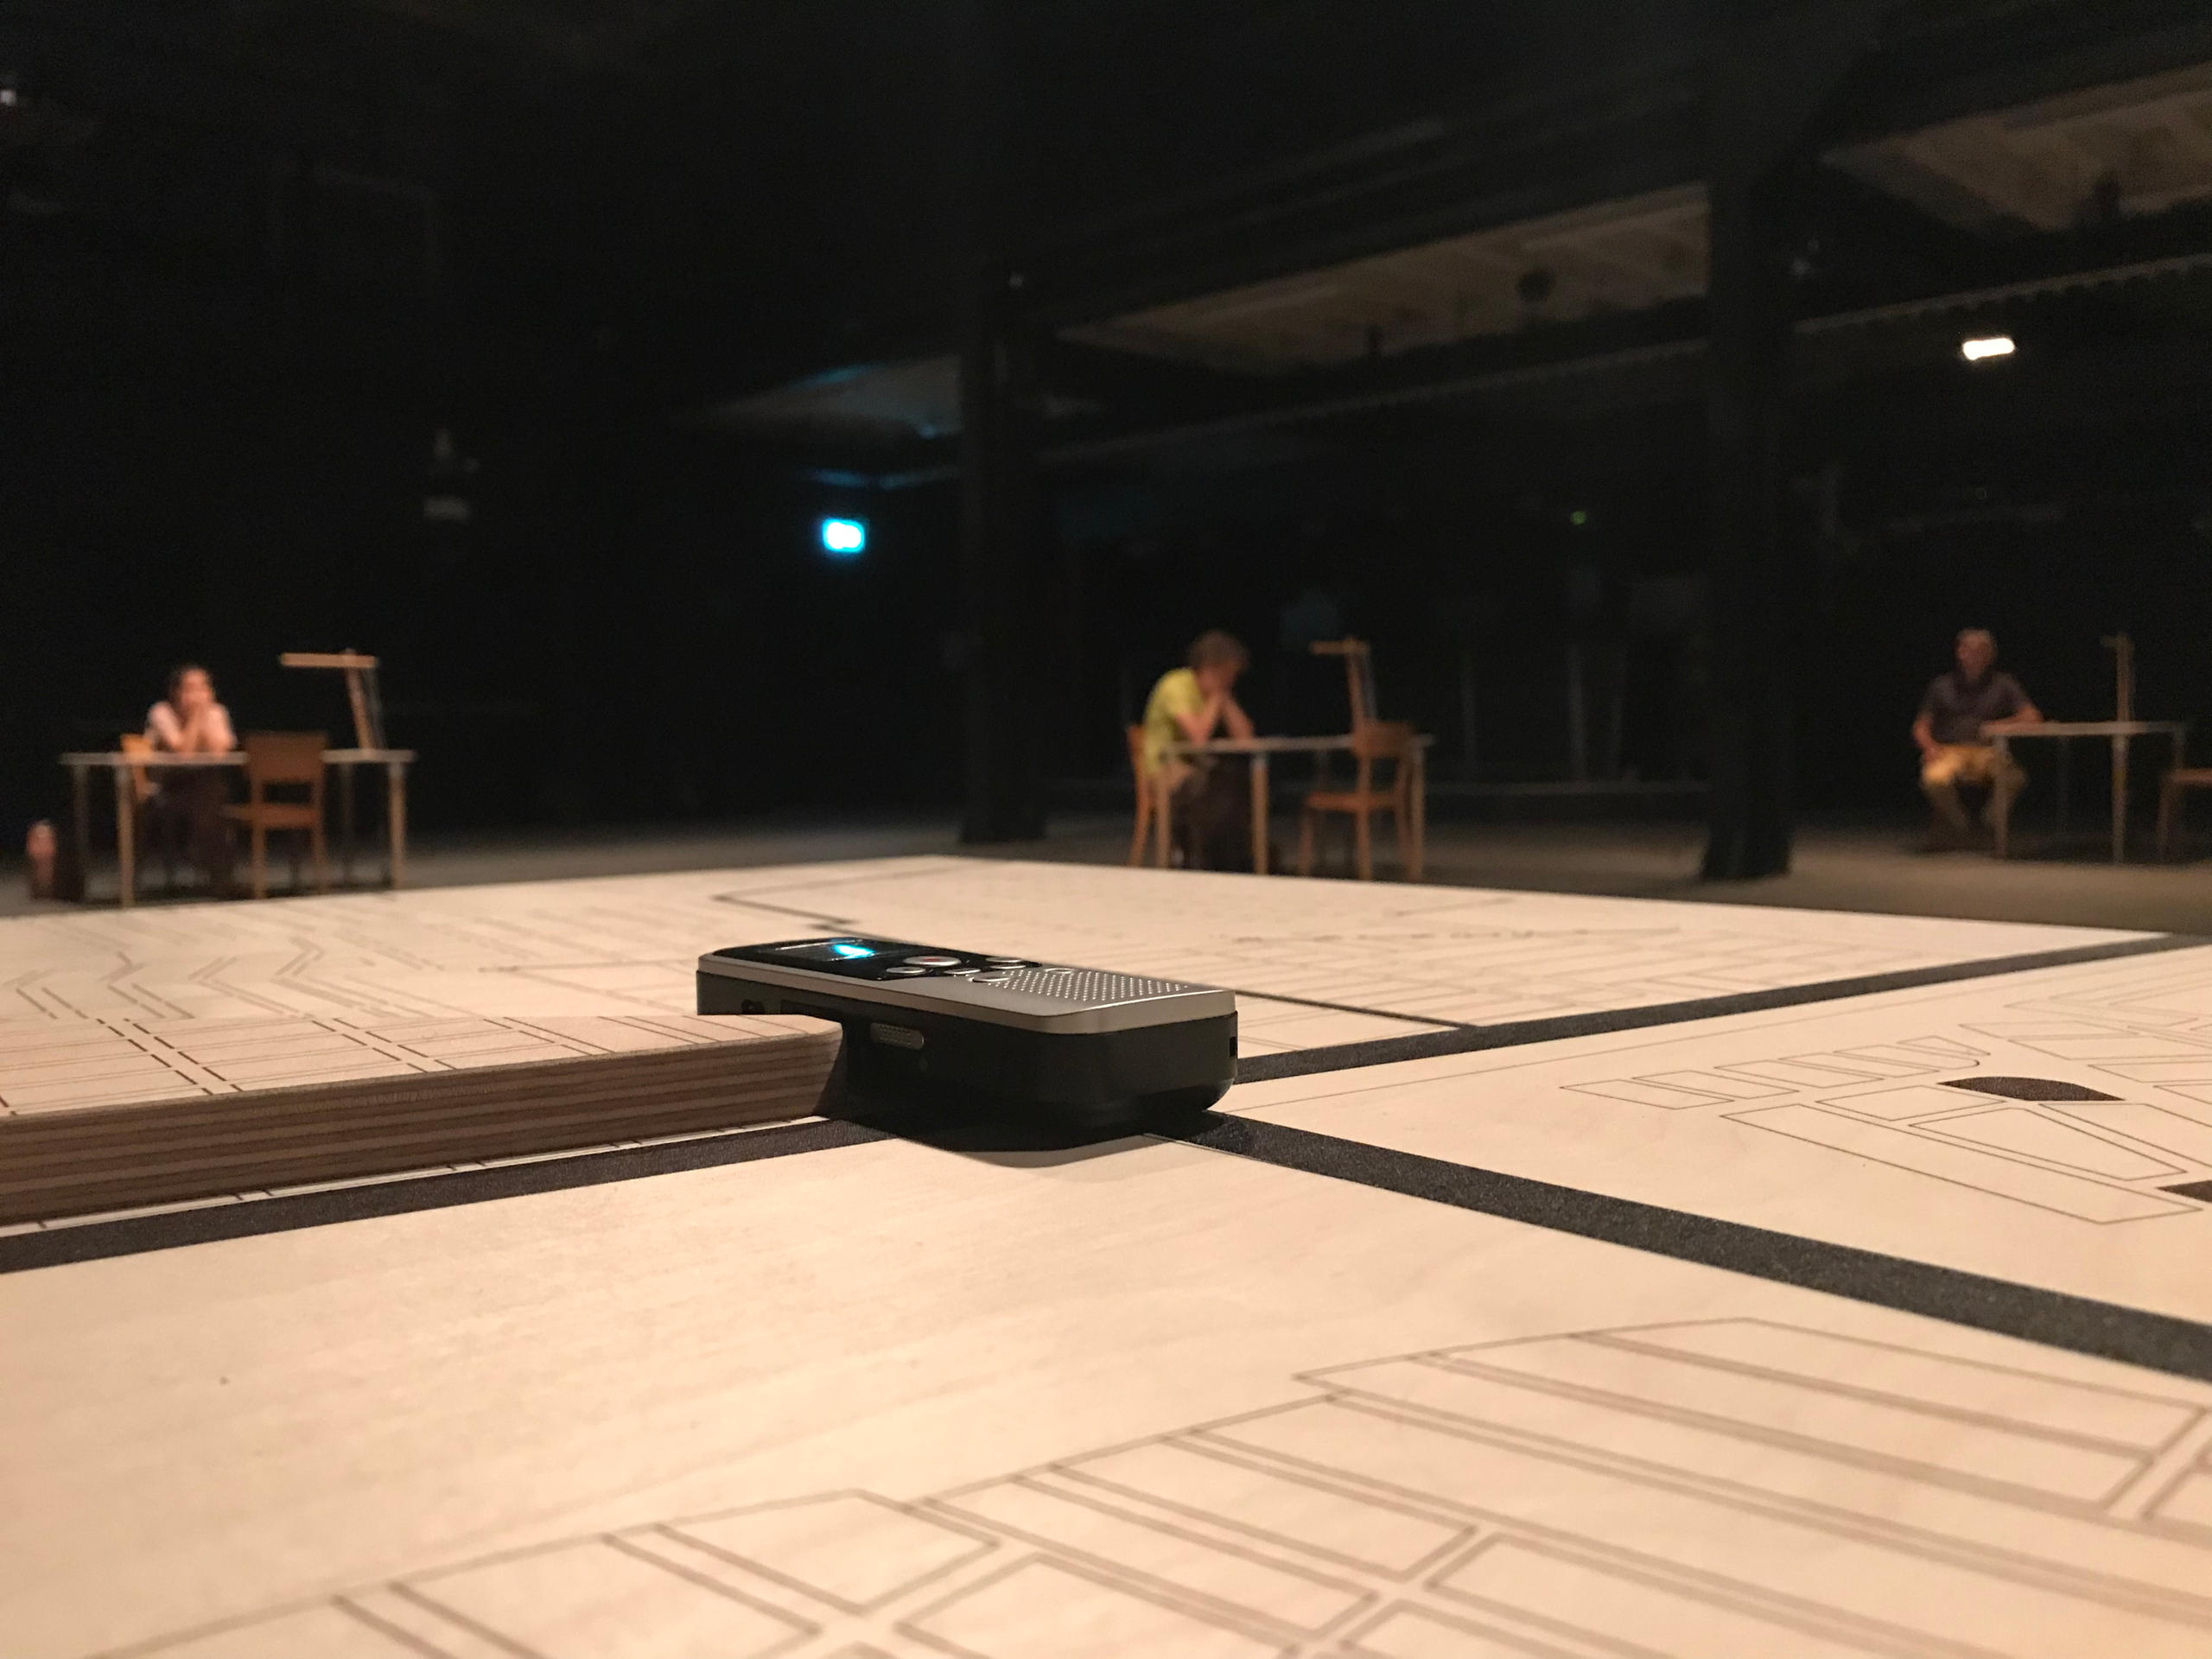 سطح طاولة خشبية وعليها آلة تسجيل داخل قاعة عروض مسرحية مظلمة